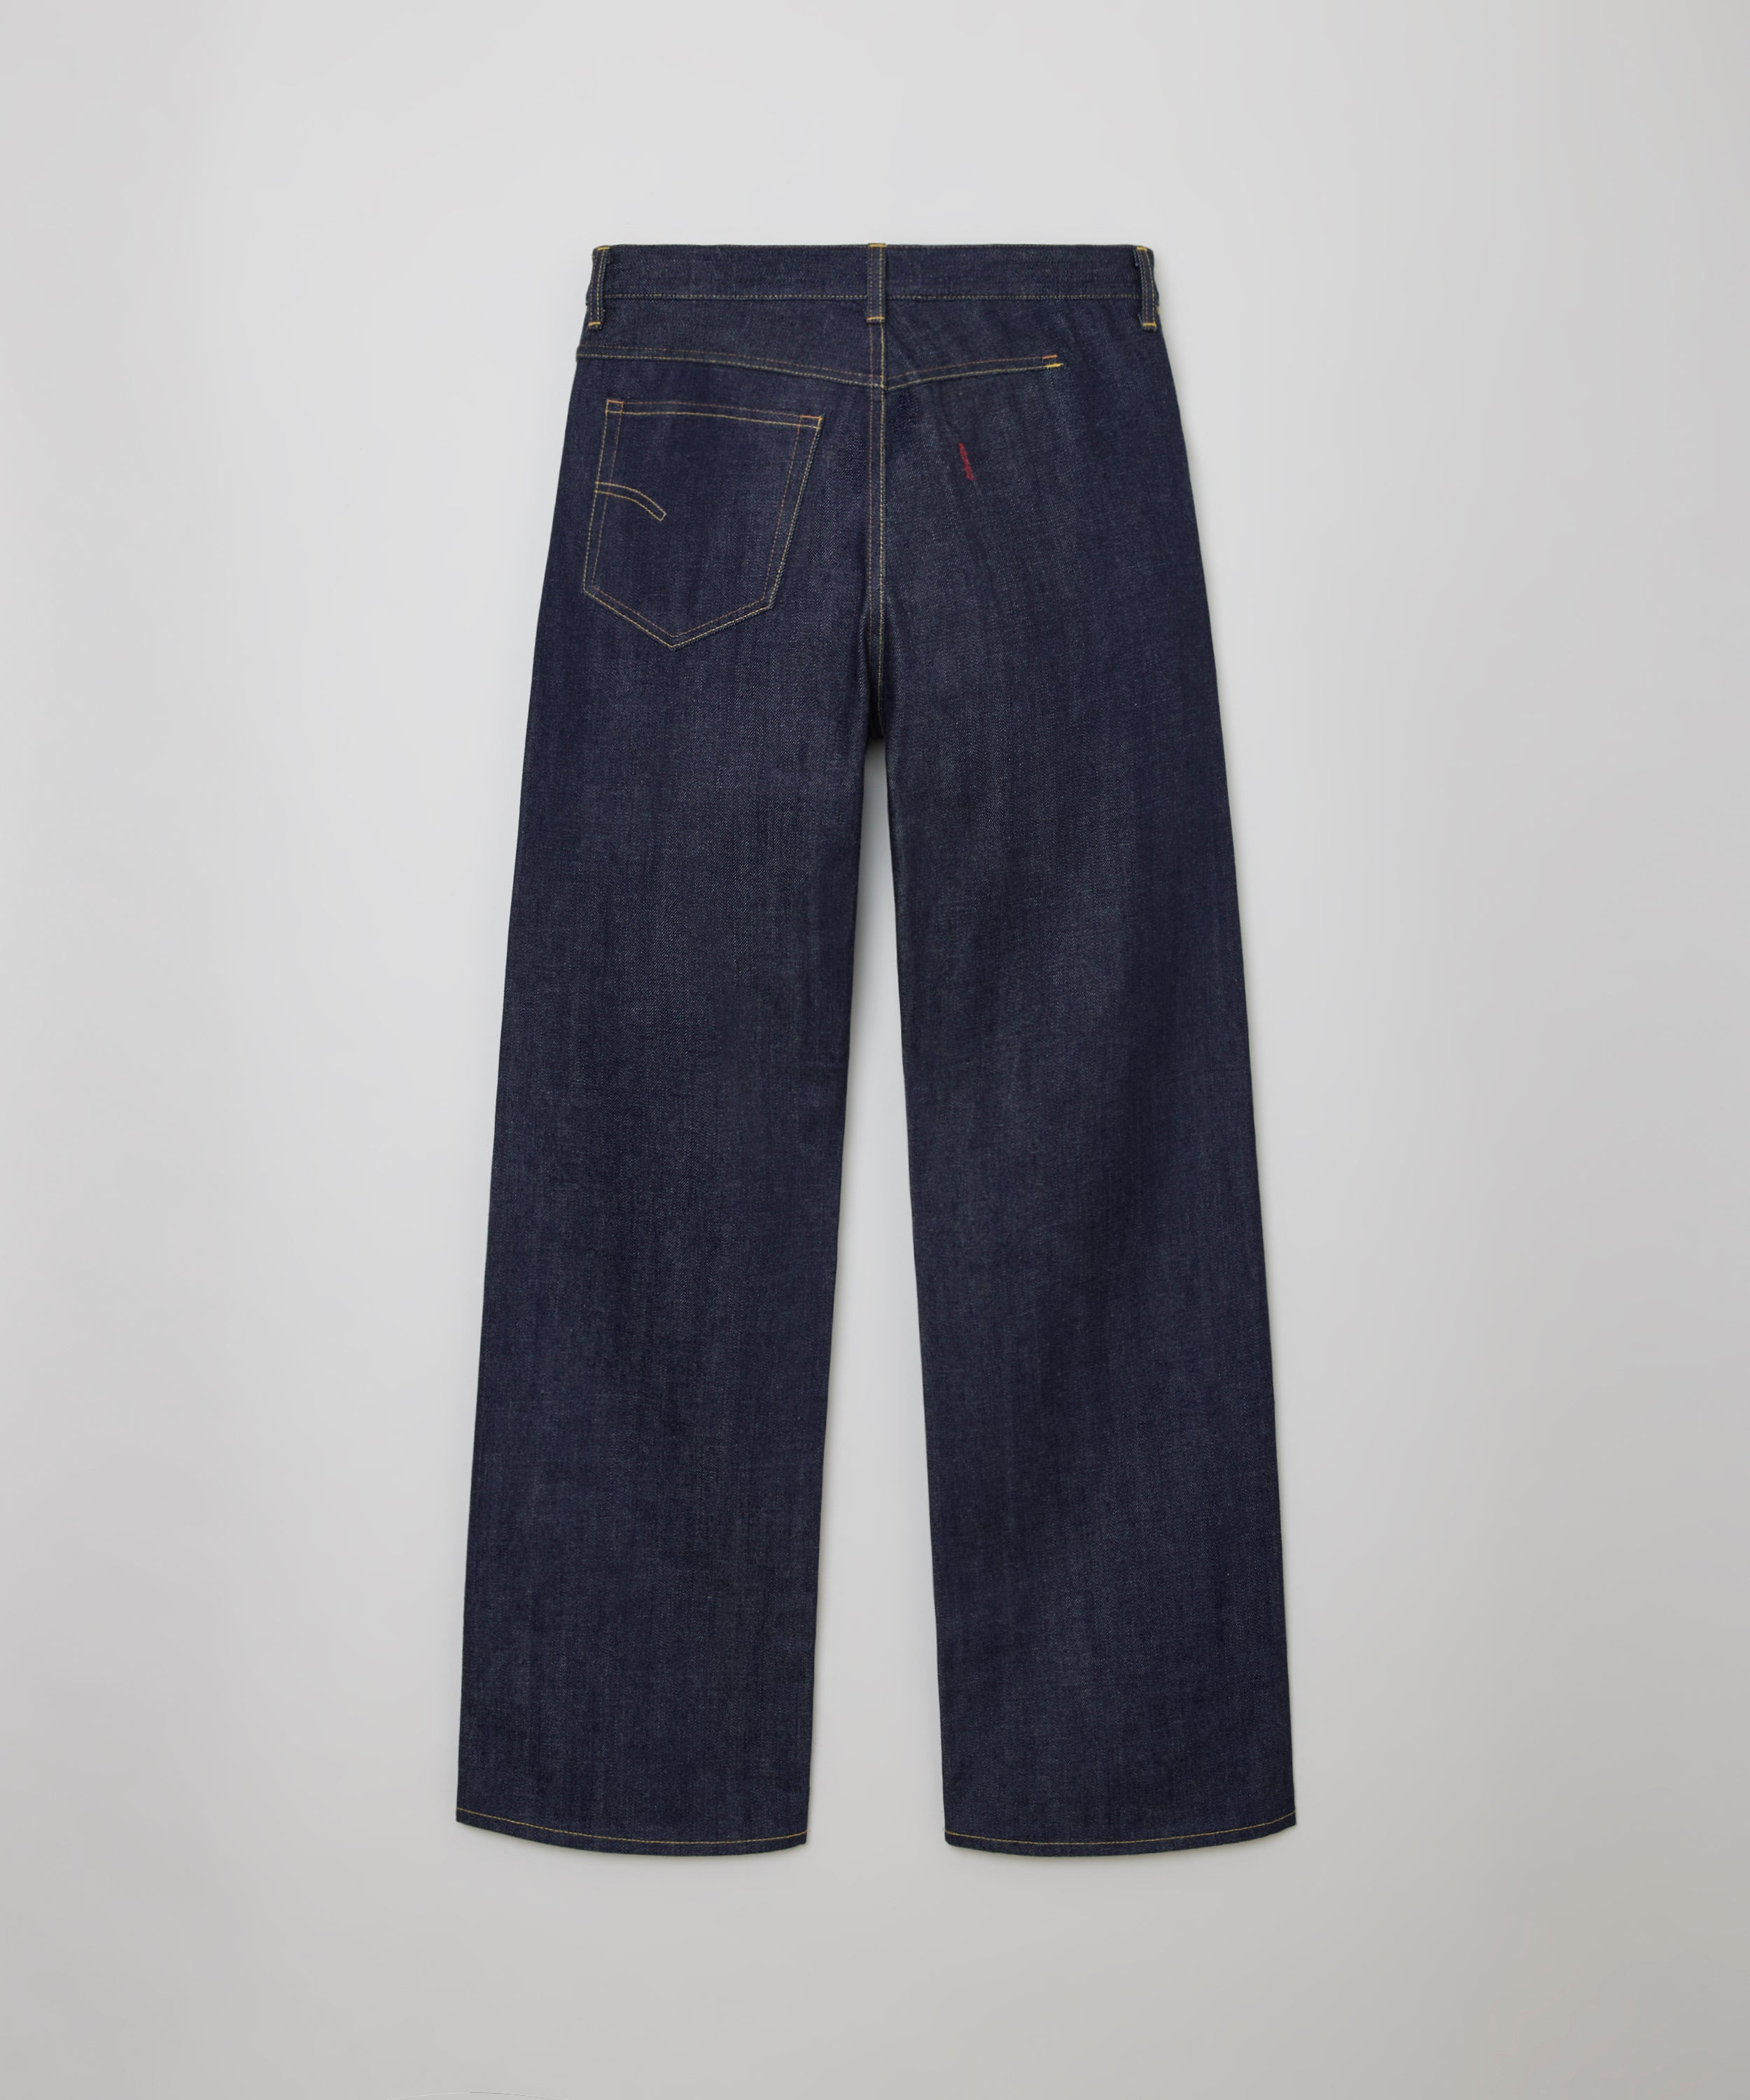 Big-E 4PK Jeans (Indigo)